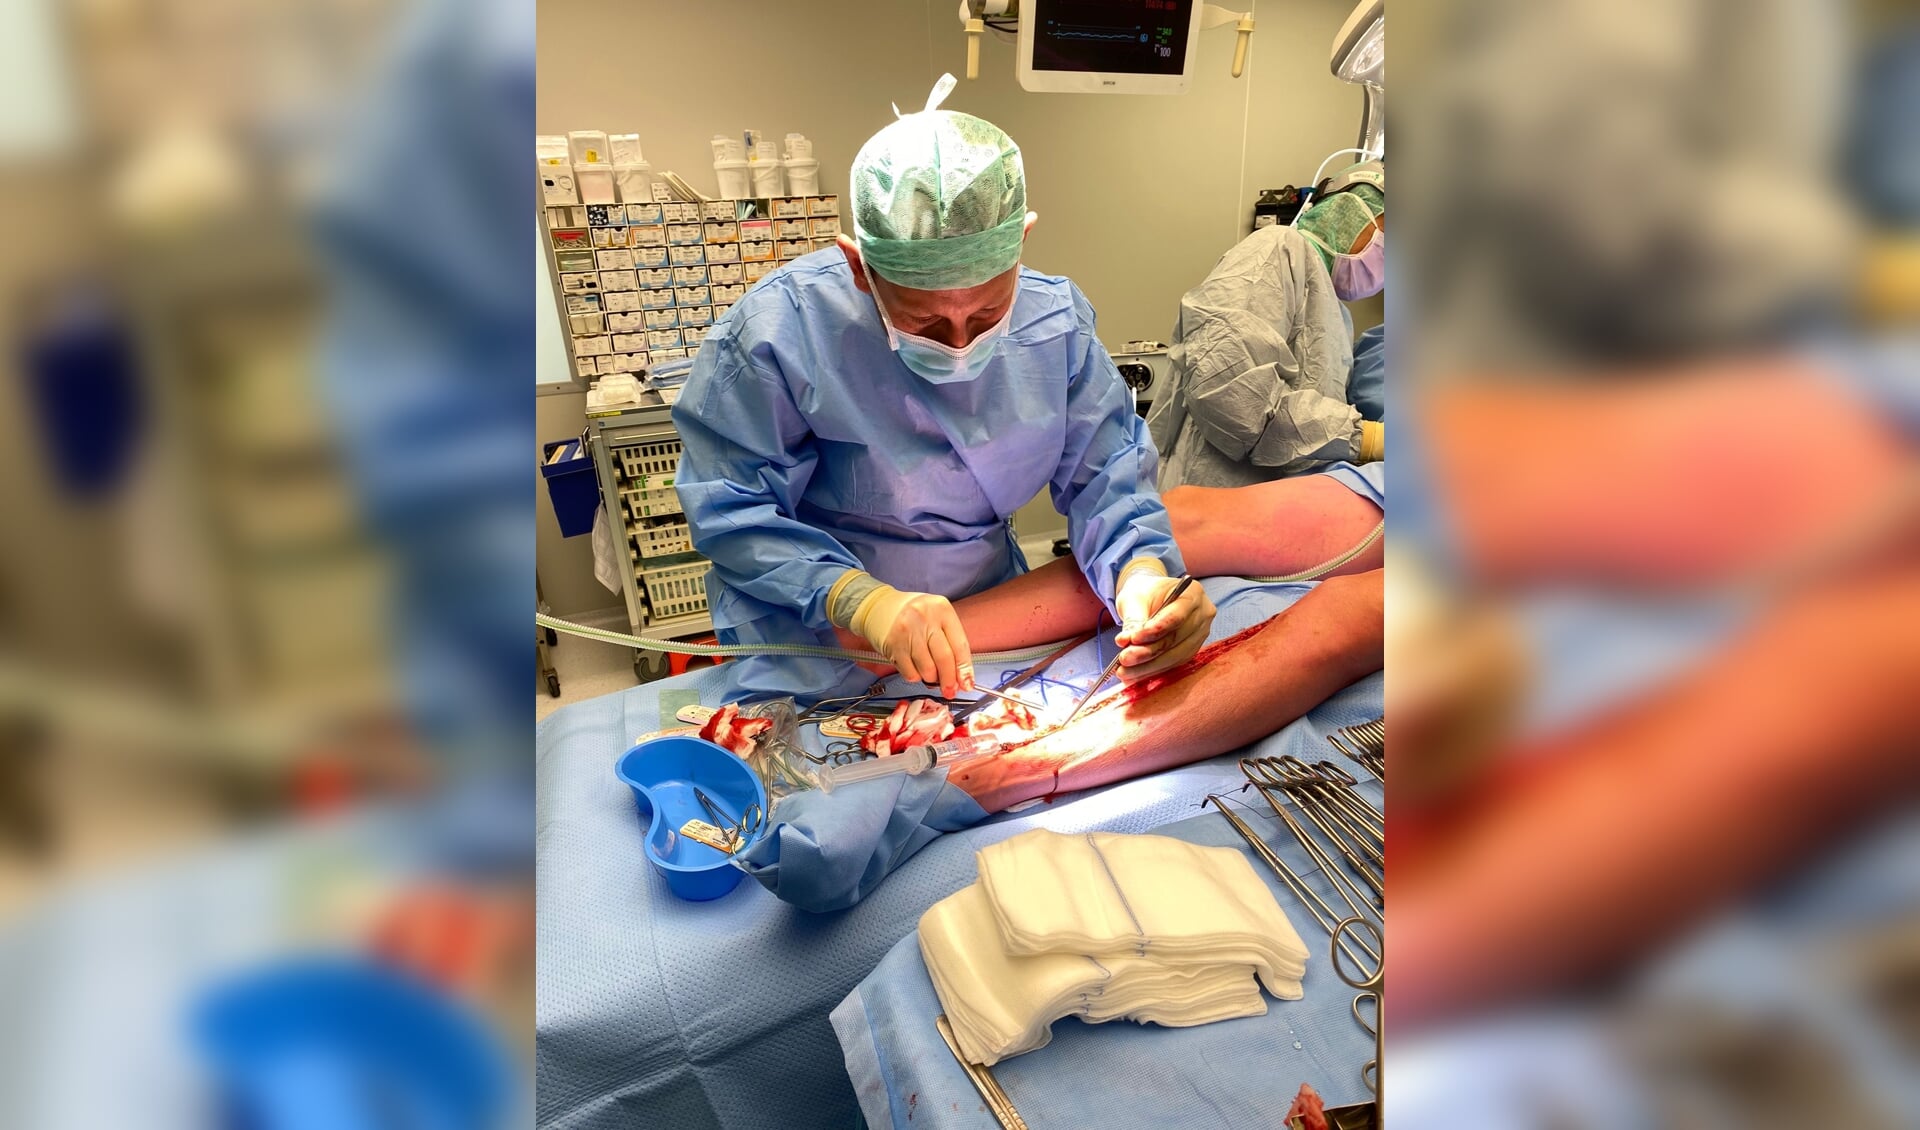 Mustafa in actie in de operatiekamer